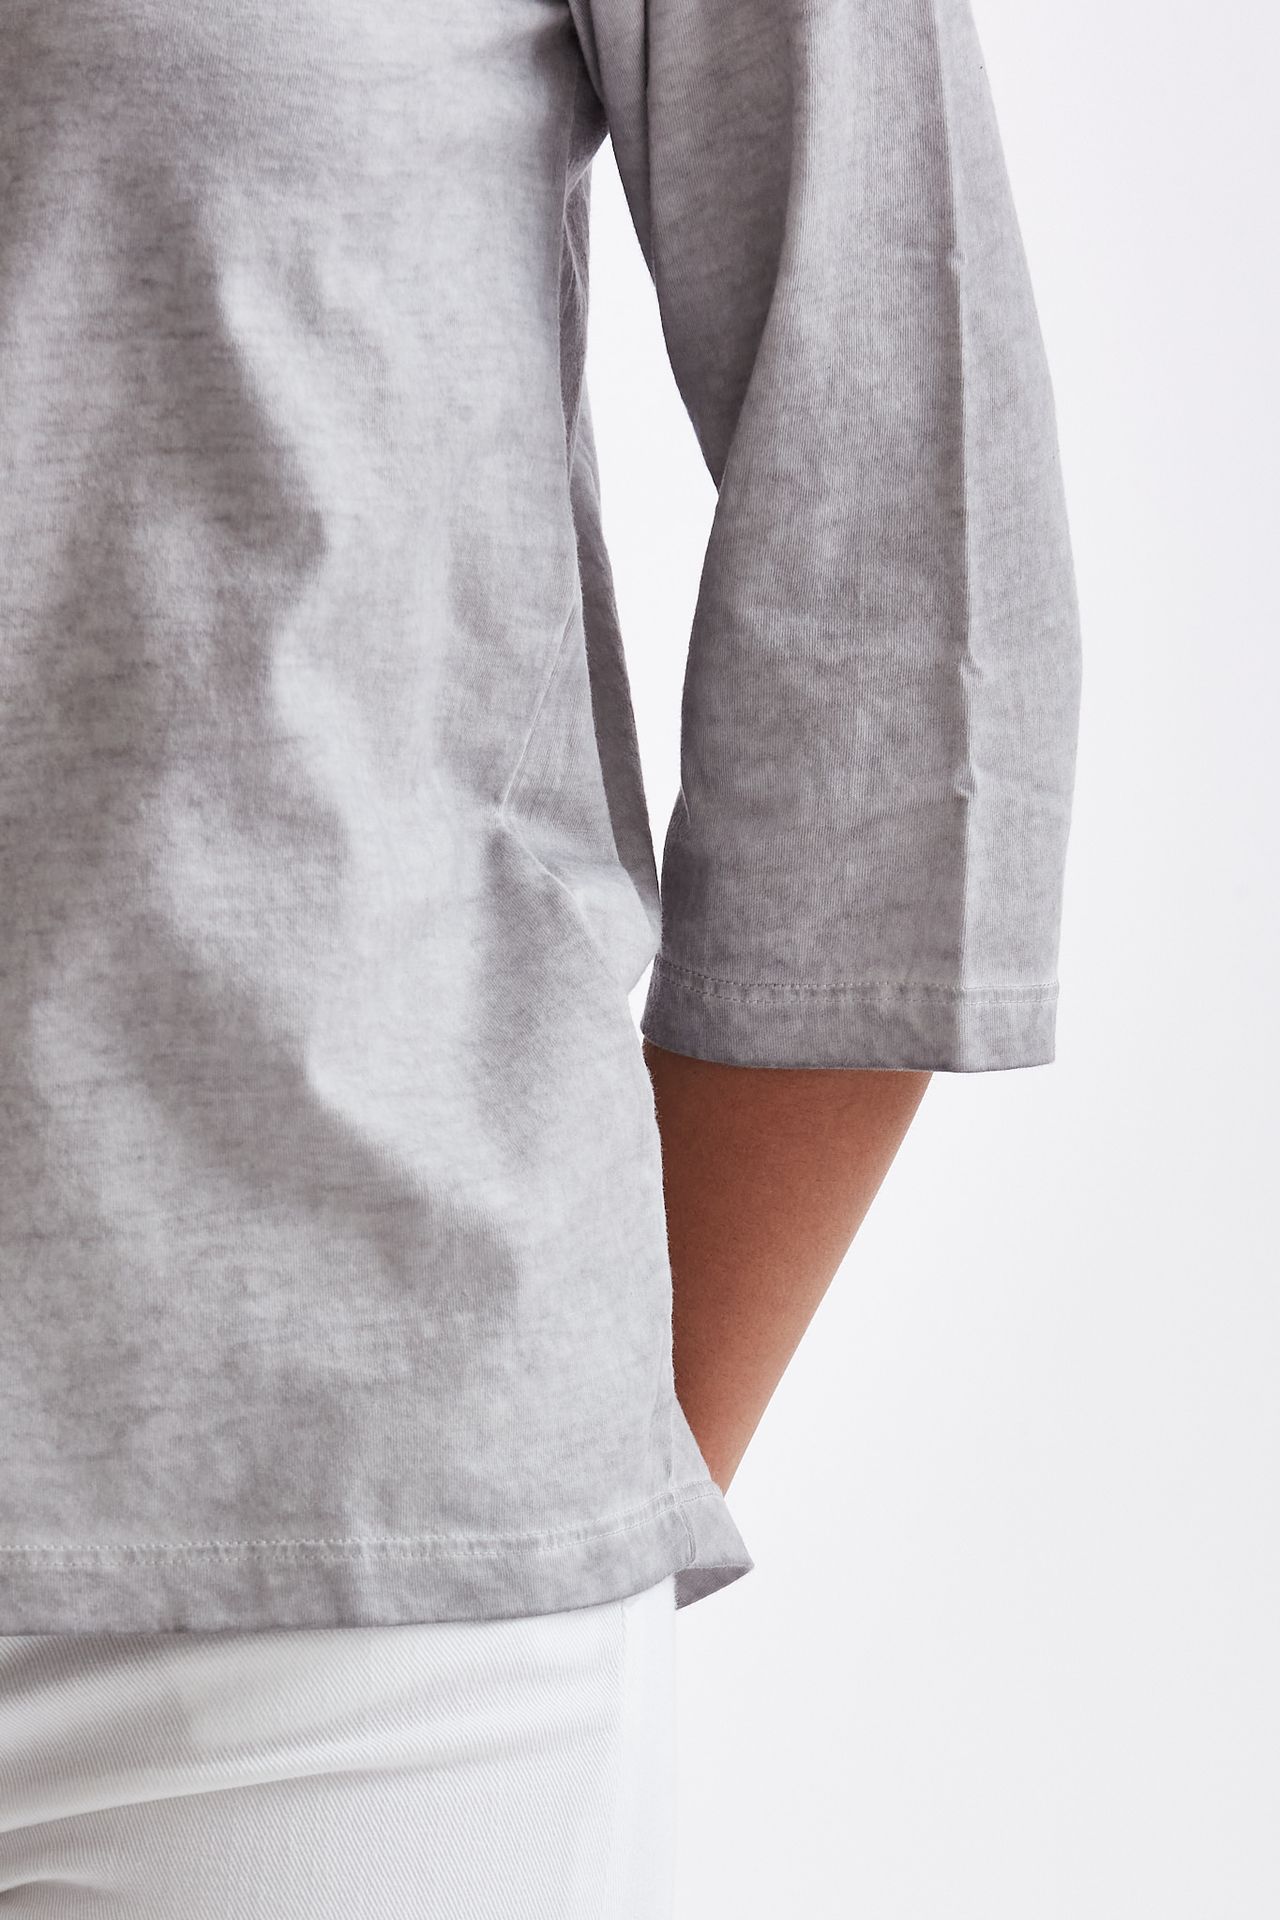 T-shirt serafino in cotone grigio